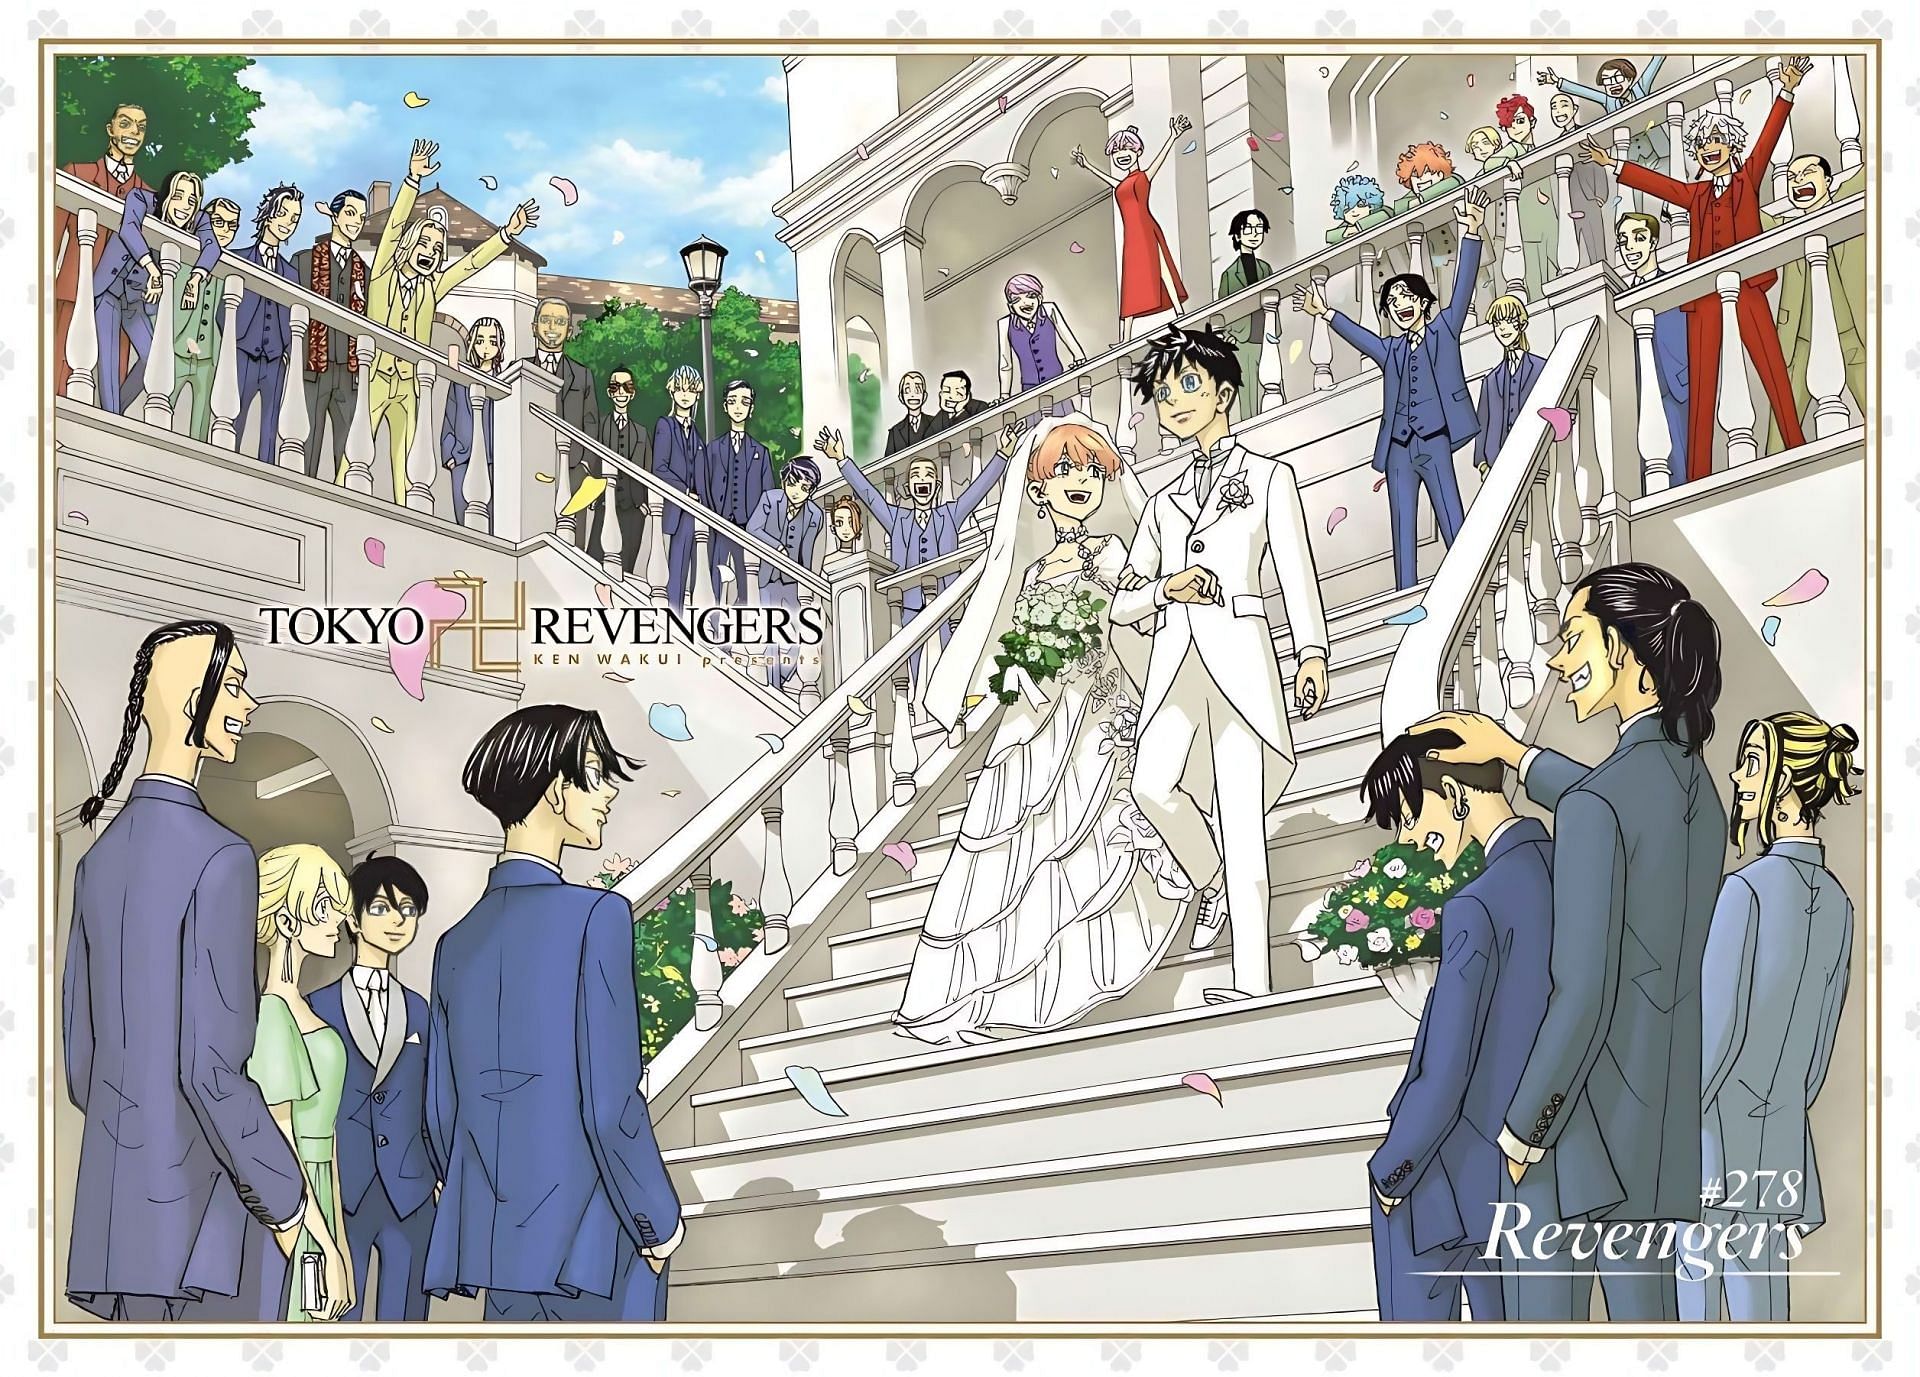 Tokyo revengers final color page (Image via Ken Wakui/Kodansha)